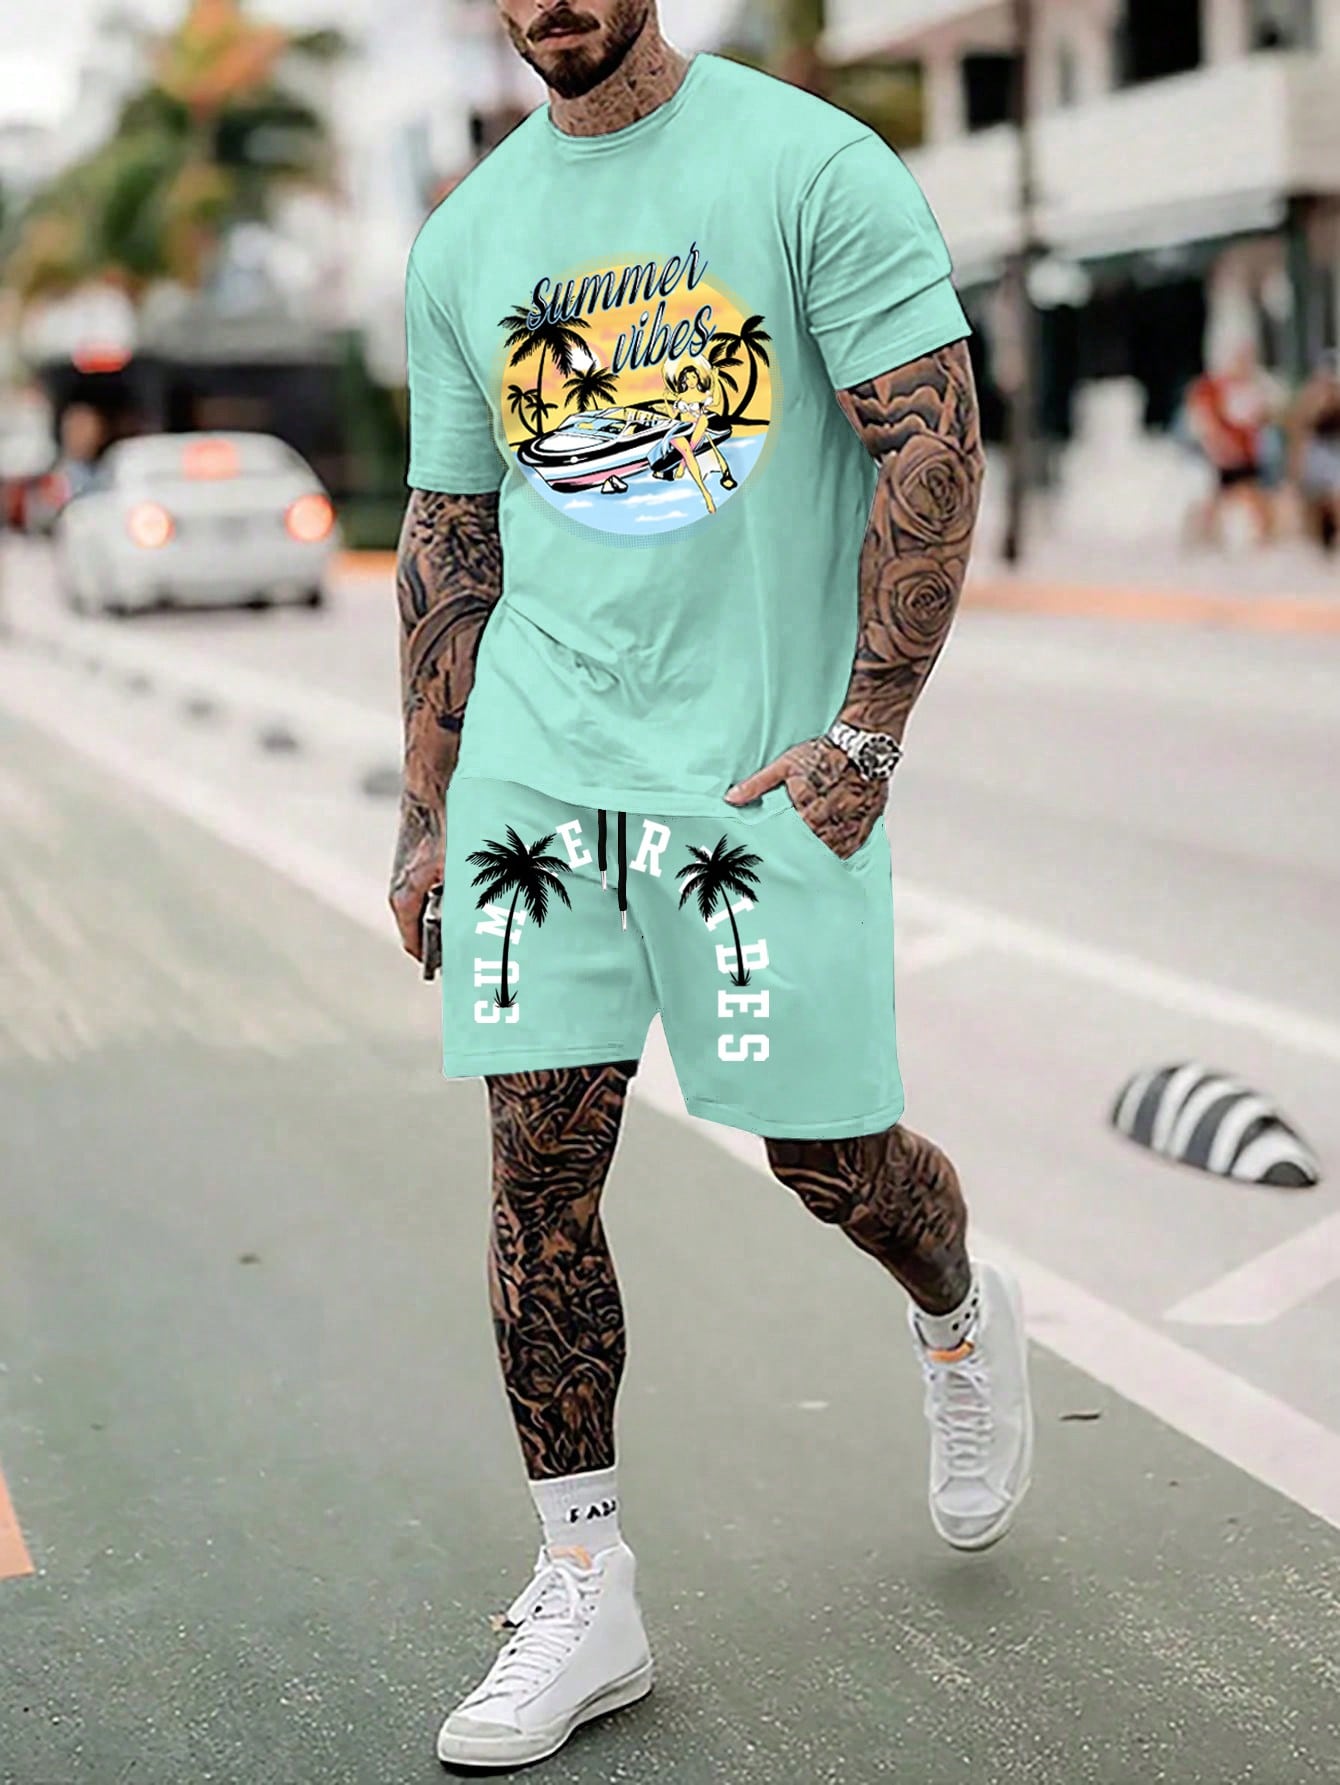 Мужская футболка с коротким рукавом и шорты Manfinity Chillmode с графическим принтом, мятно-зеленый